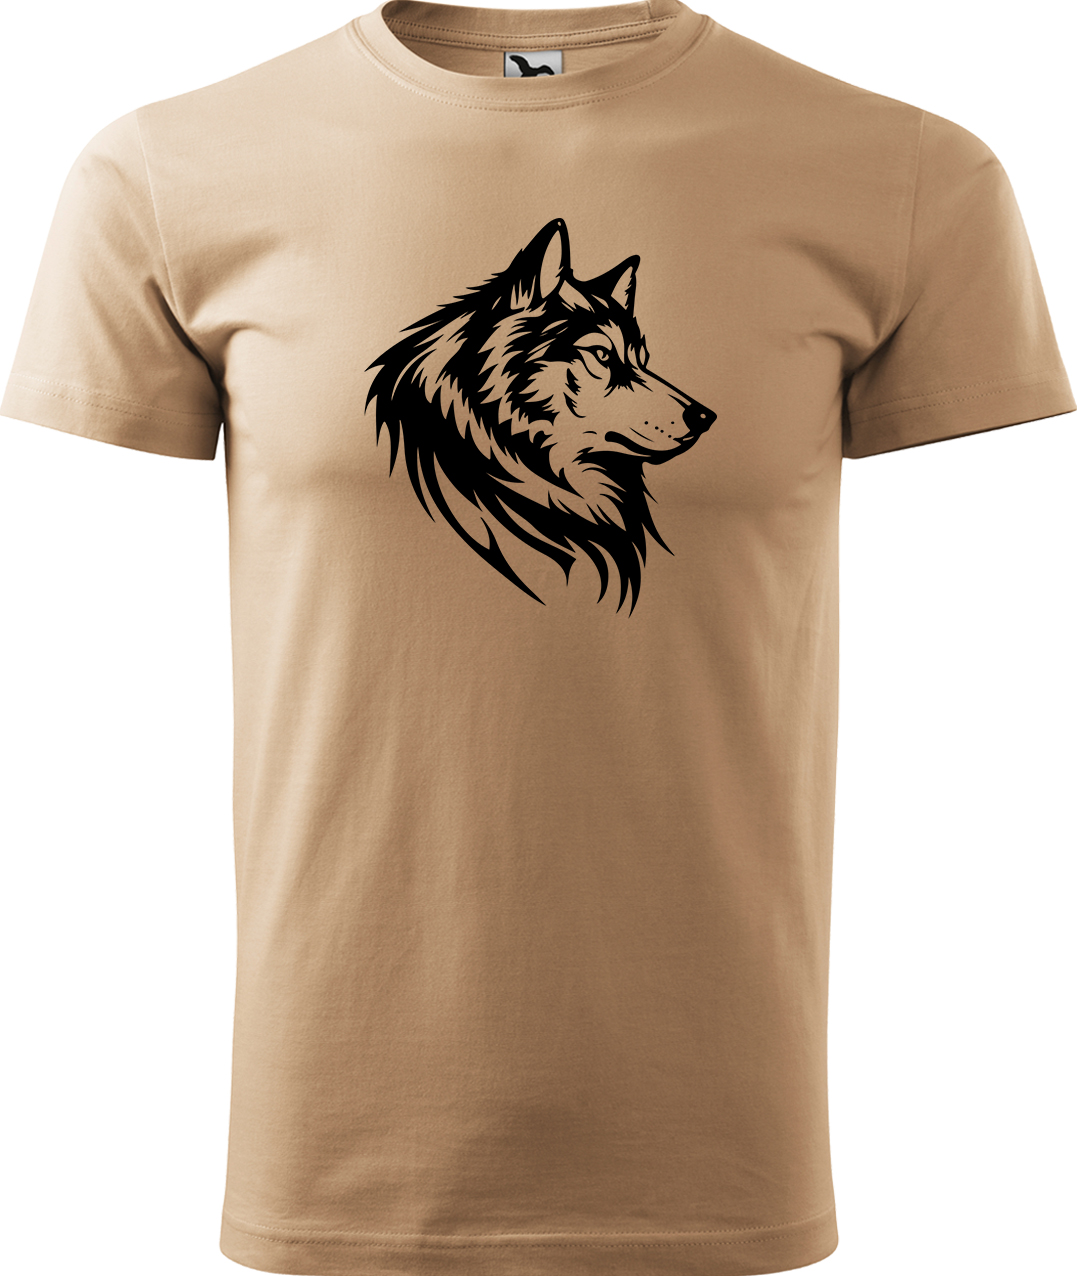 Pánské tričko s vlkem - Wolf Velikost: M, Barva: Písková (08), Střih: pánský